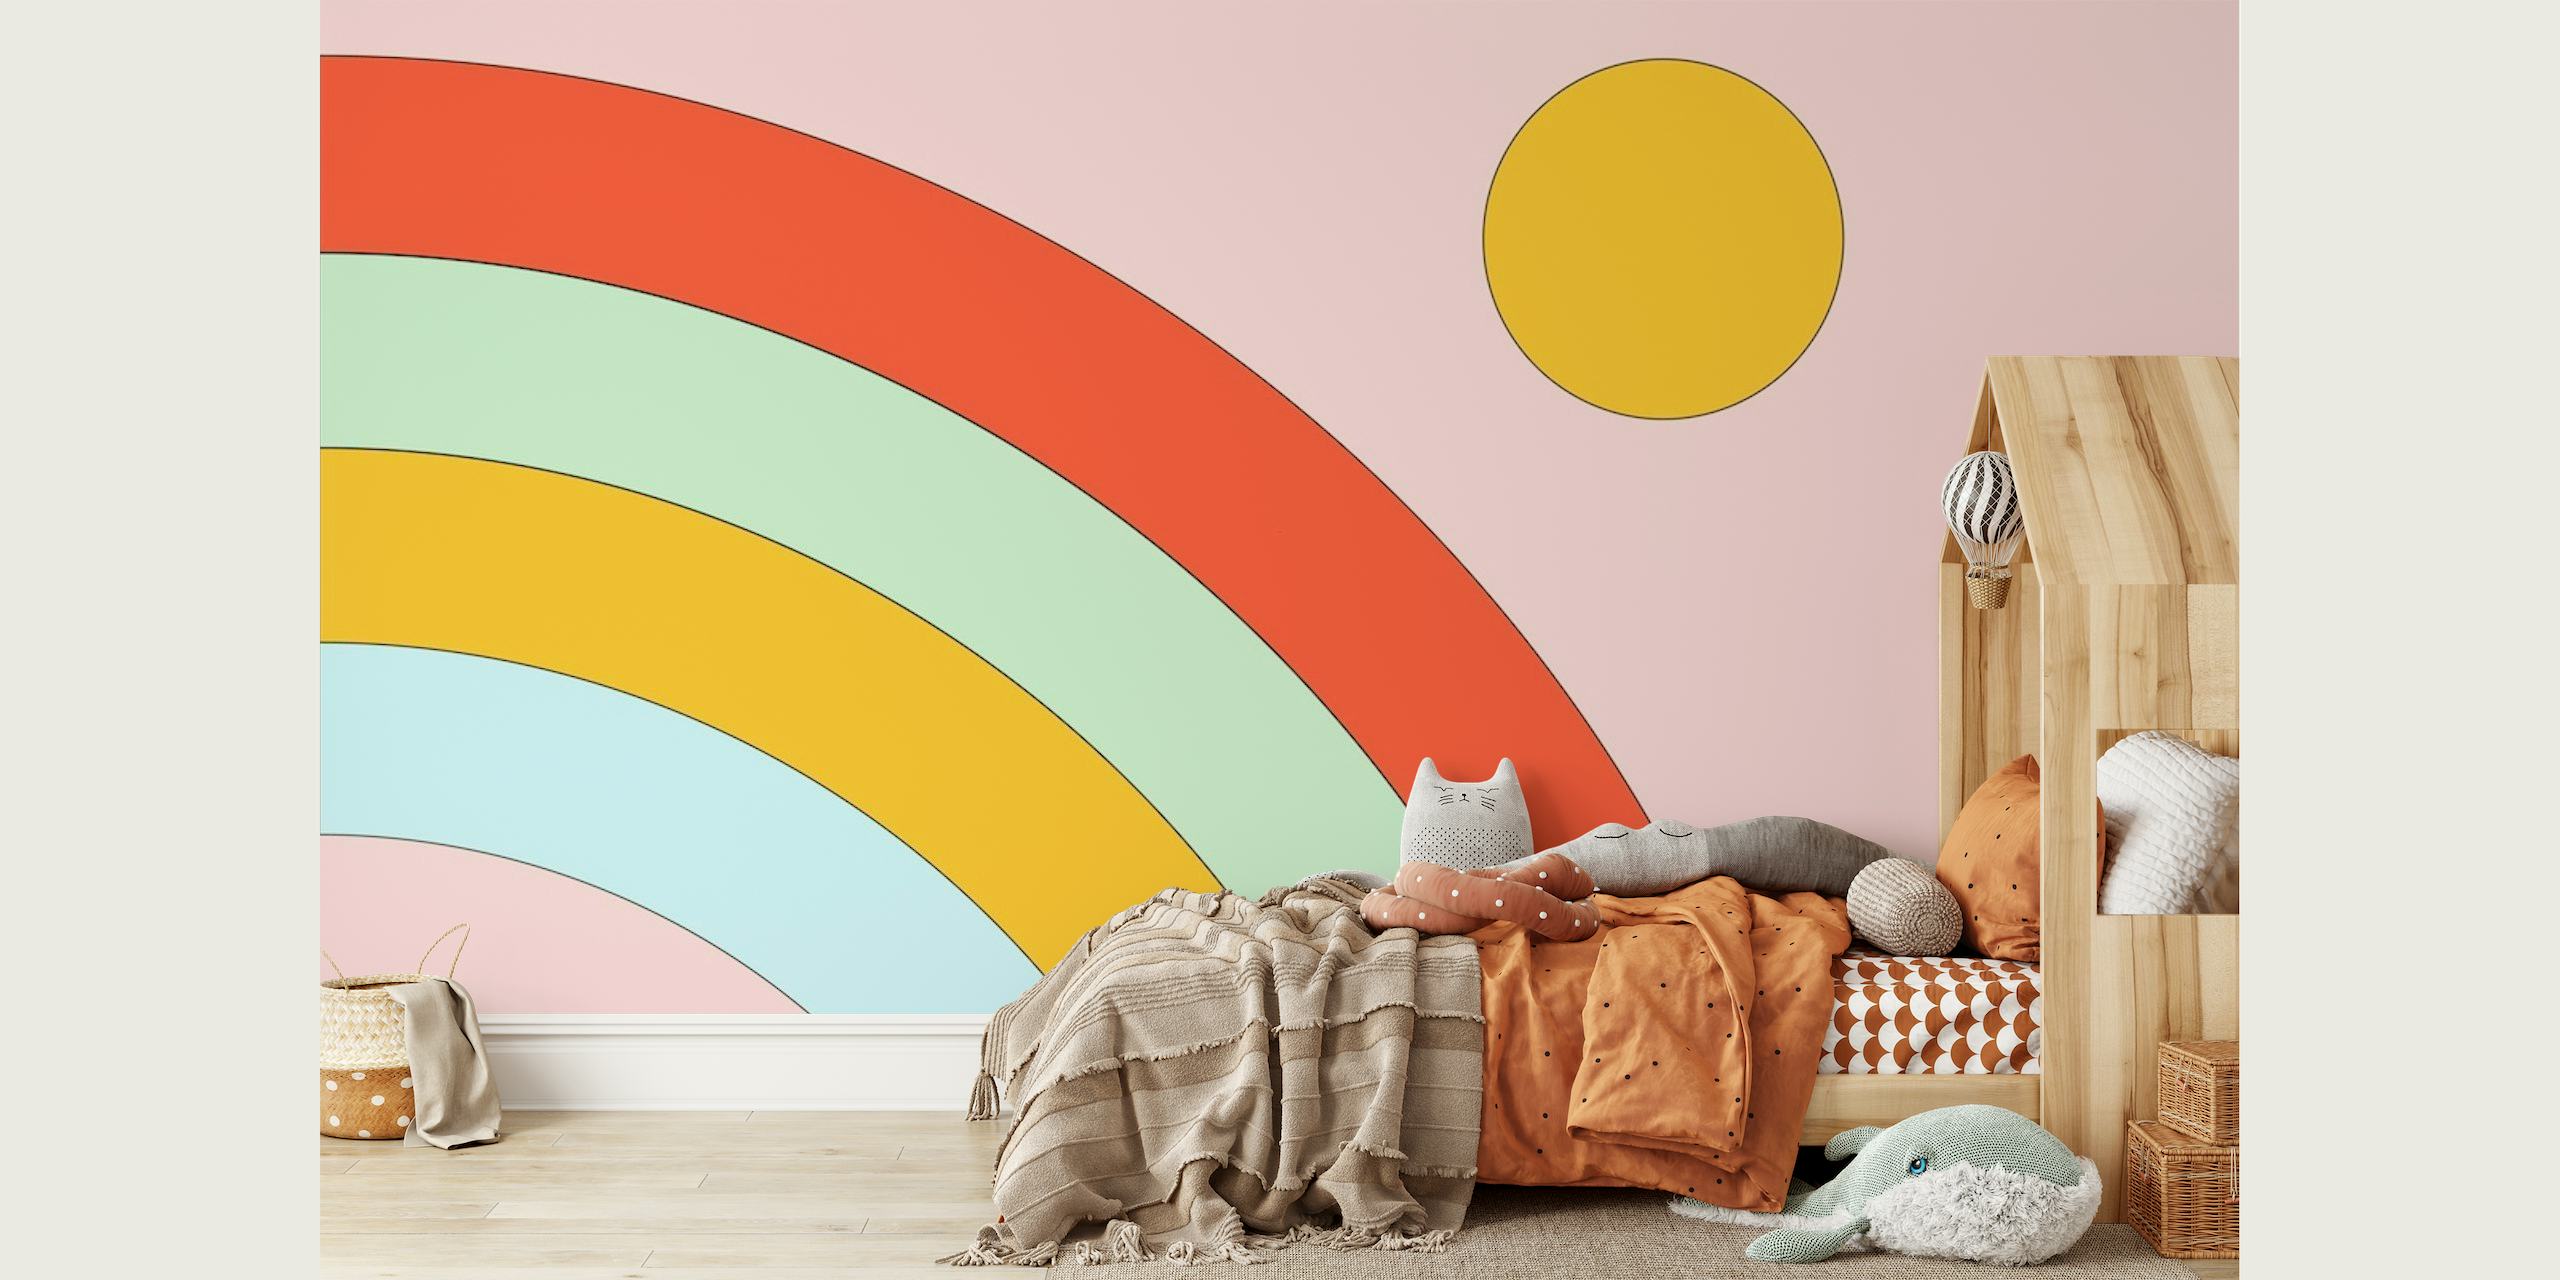 Colorful Retro Rainbow papel pintado